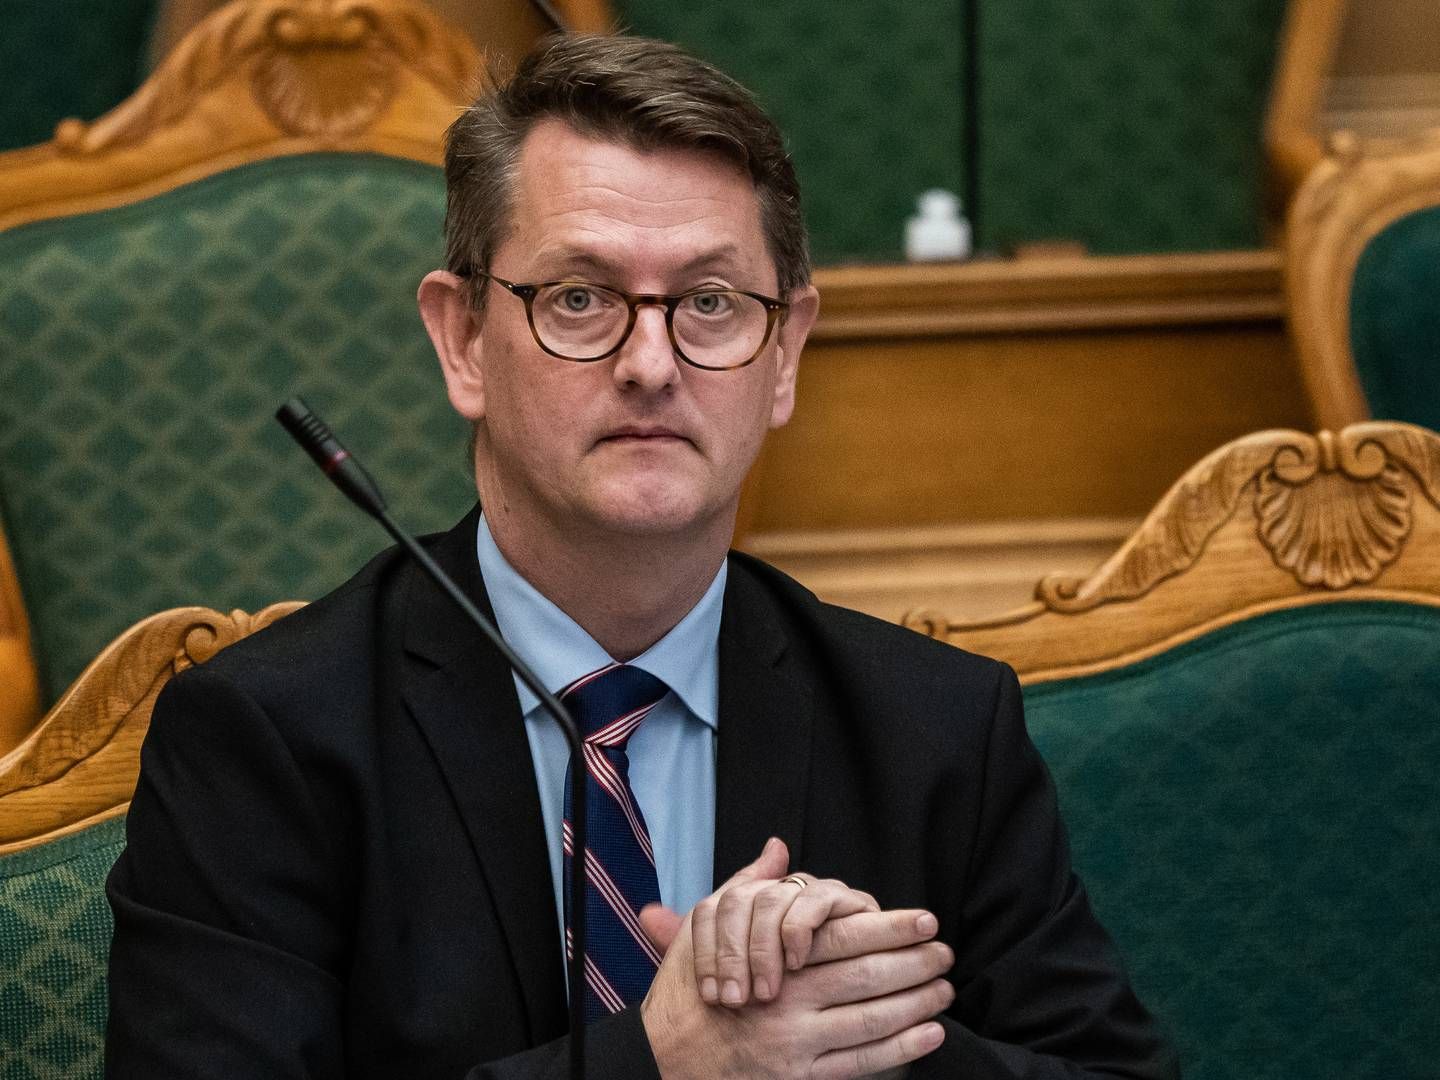 Erhvervsordfører Torsten Schack Pedersen (V) vil øge kompensationen til selvstændige. | Foto: Emil Helms/Ritzau Scanpix